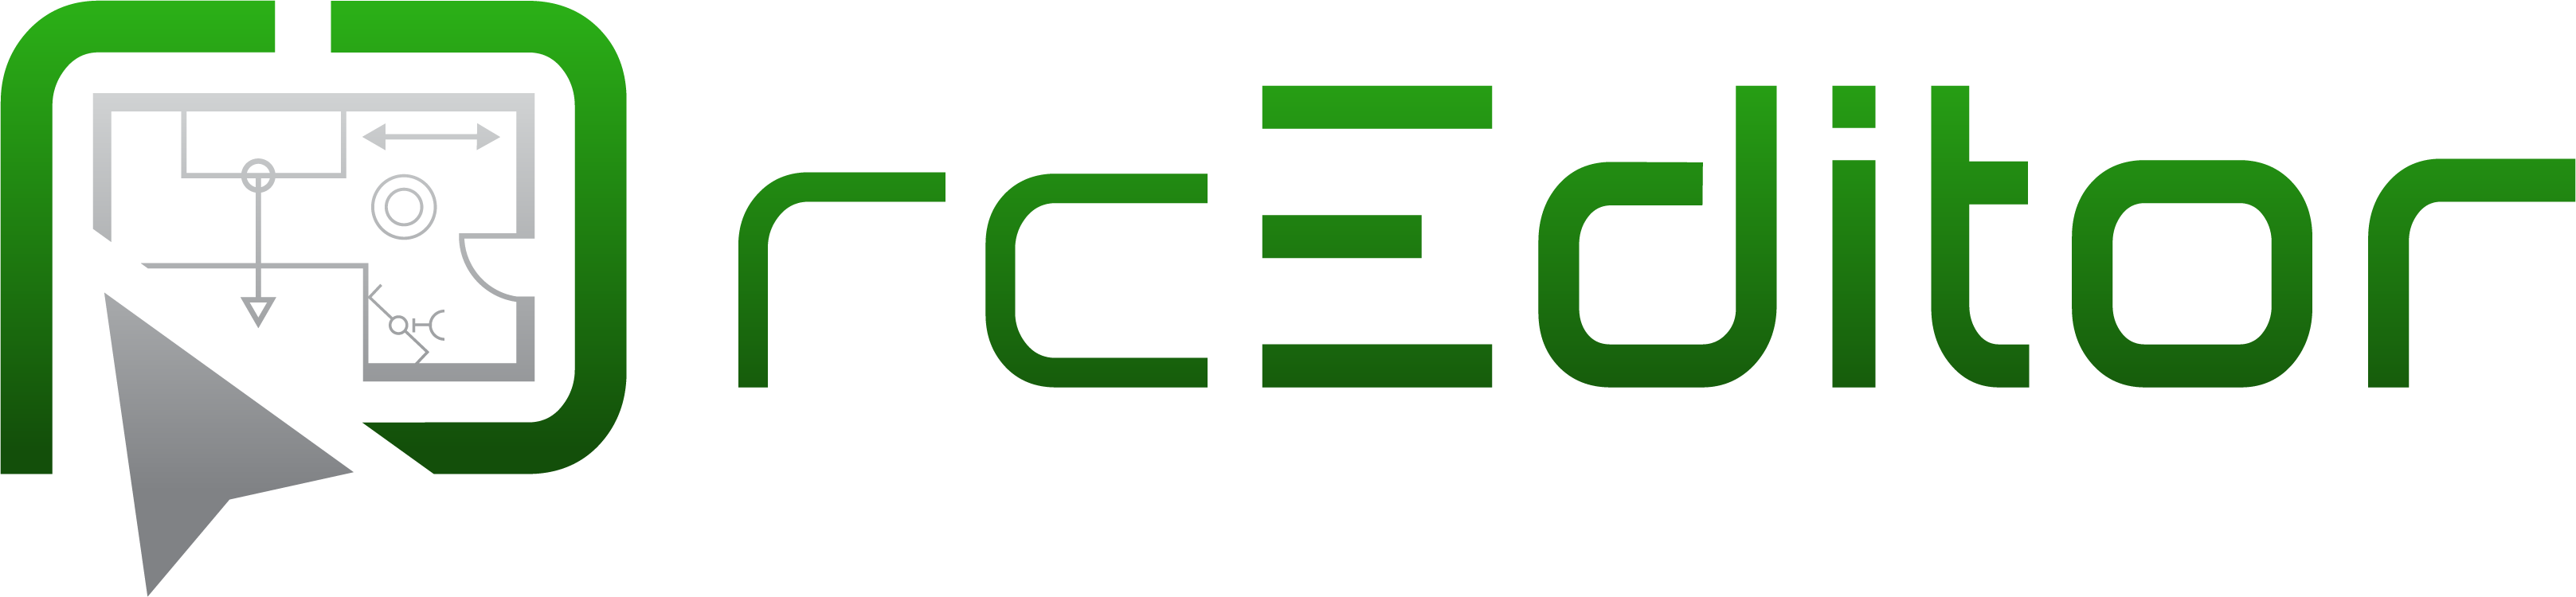 rcEditor Logo und Schriftzug